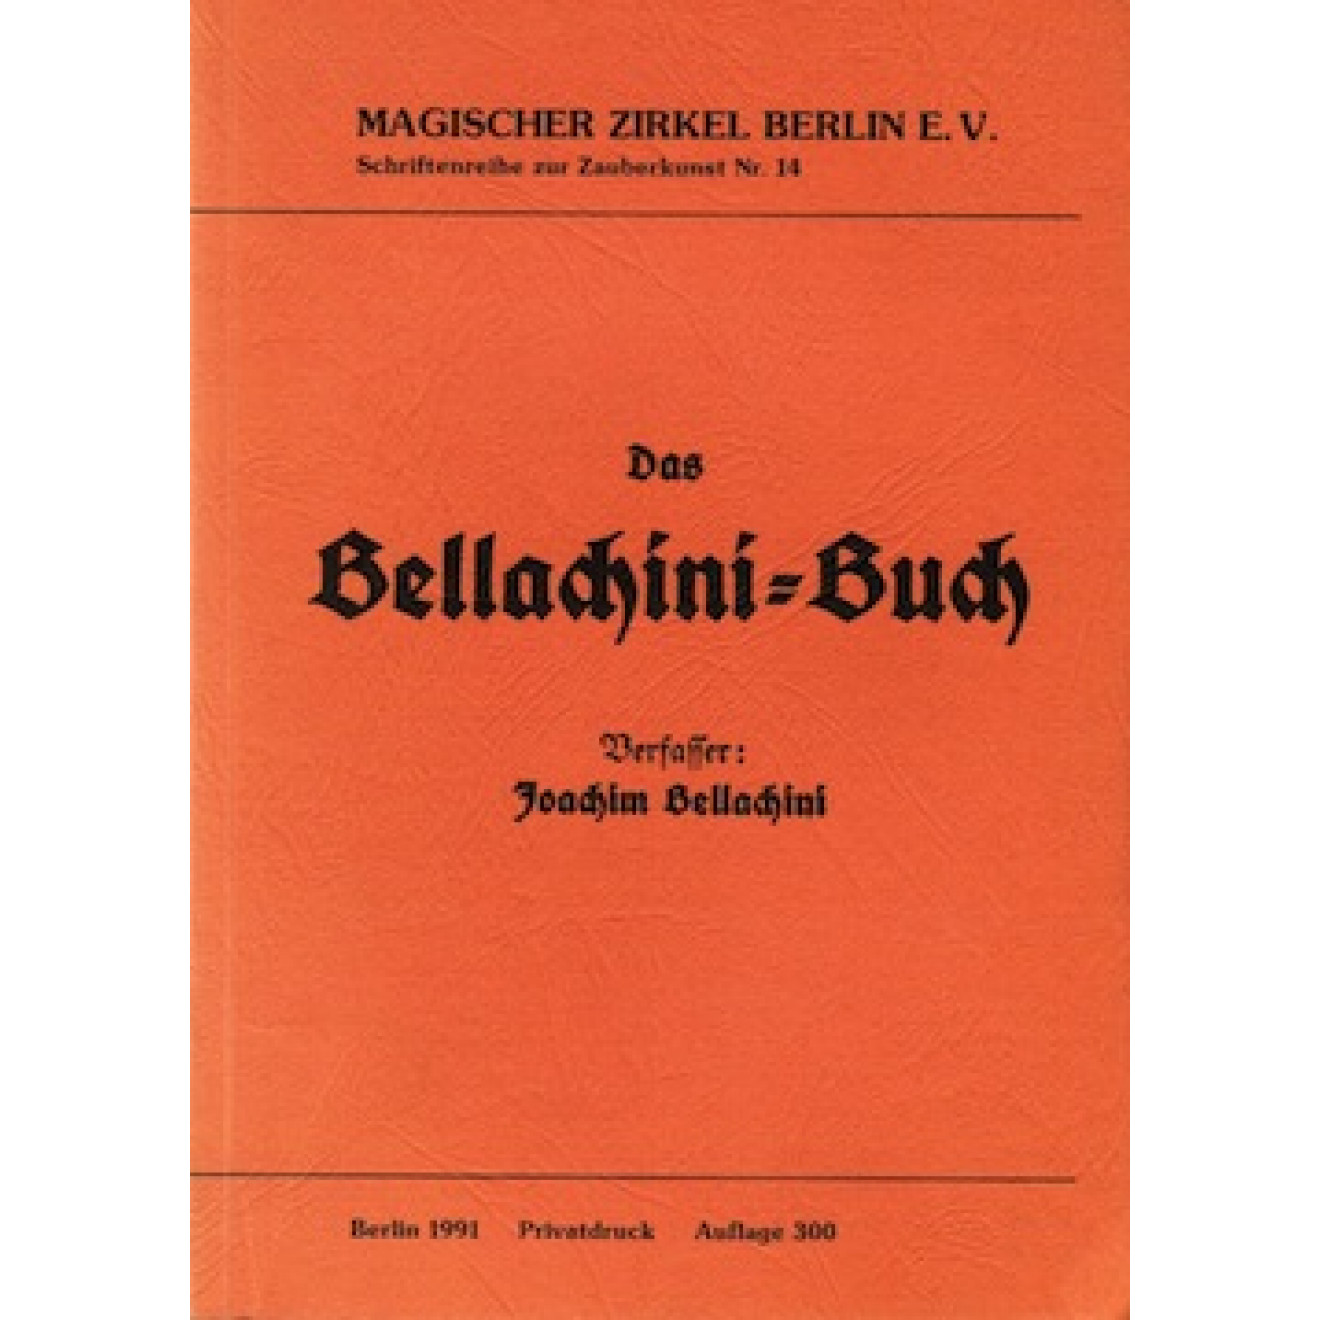 Das Bellachini-Buch